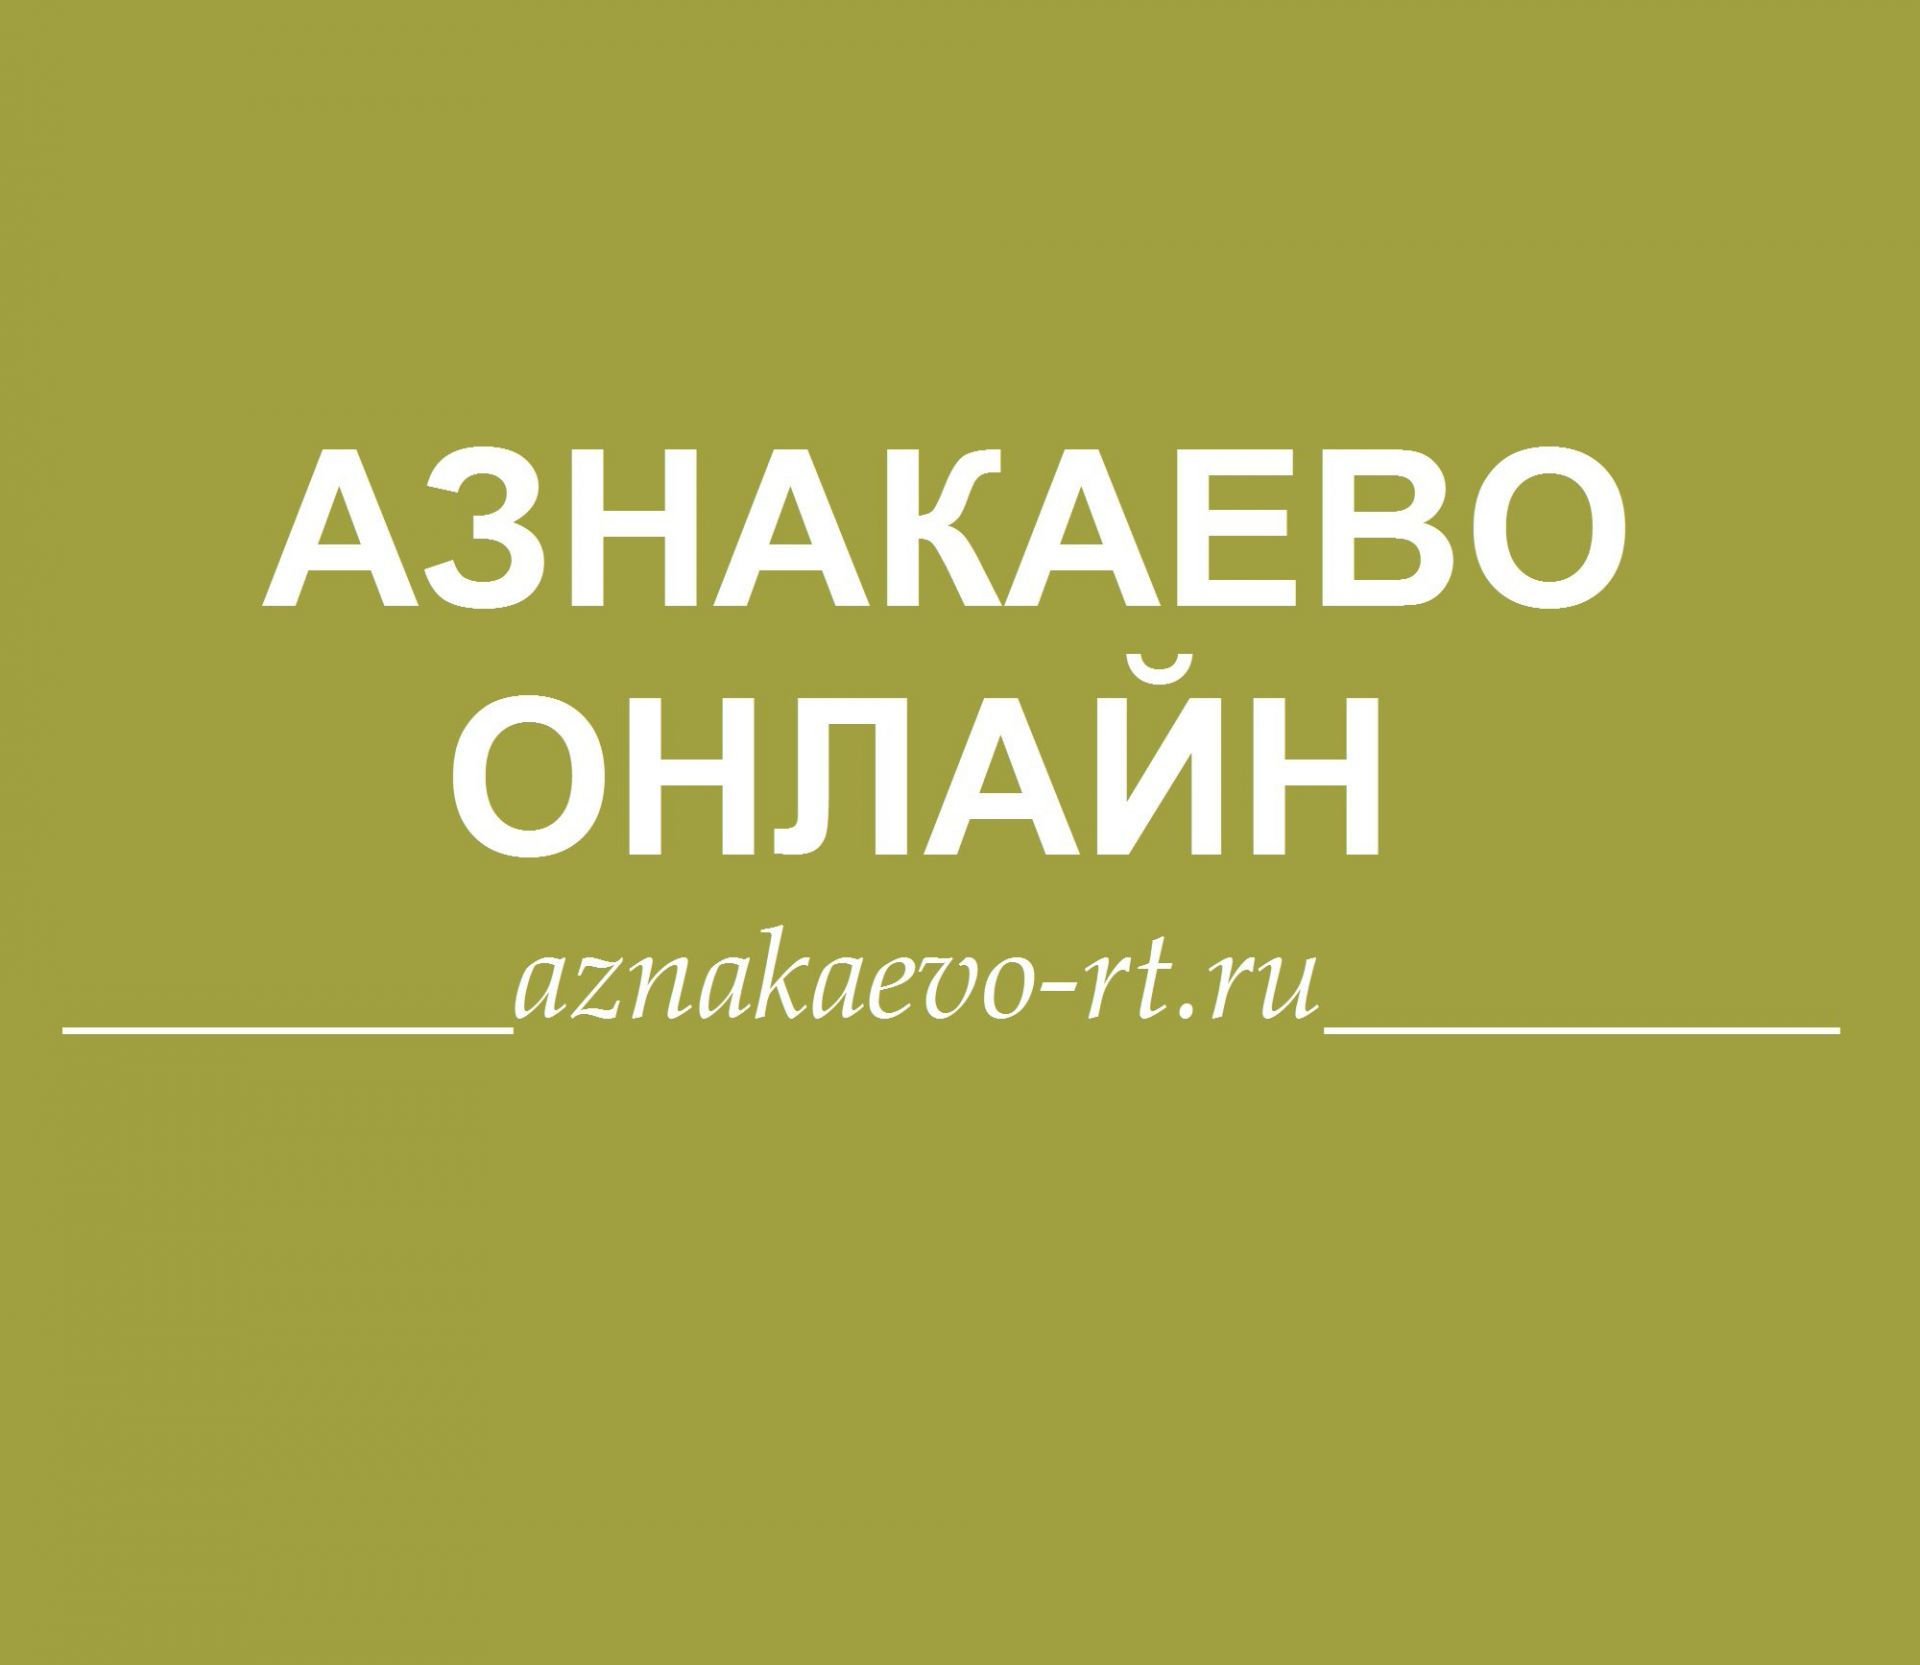 ВНИМАНИЕ!!! В Азнакаево состоится грандиозная выставка – продажа “САМБАШ”